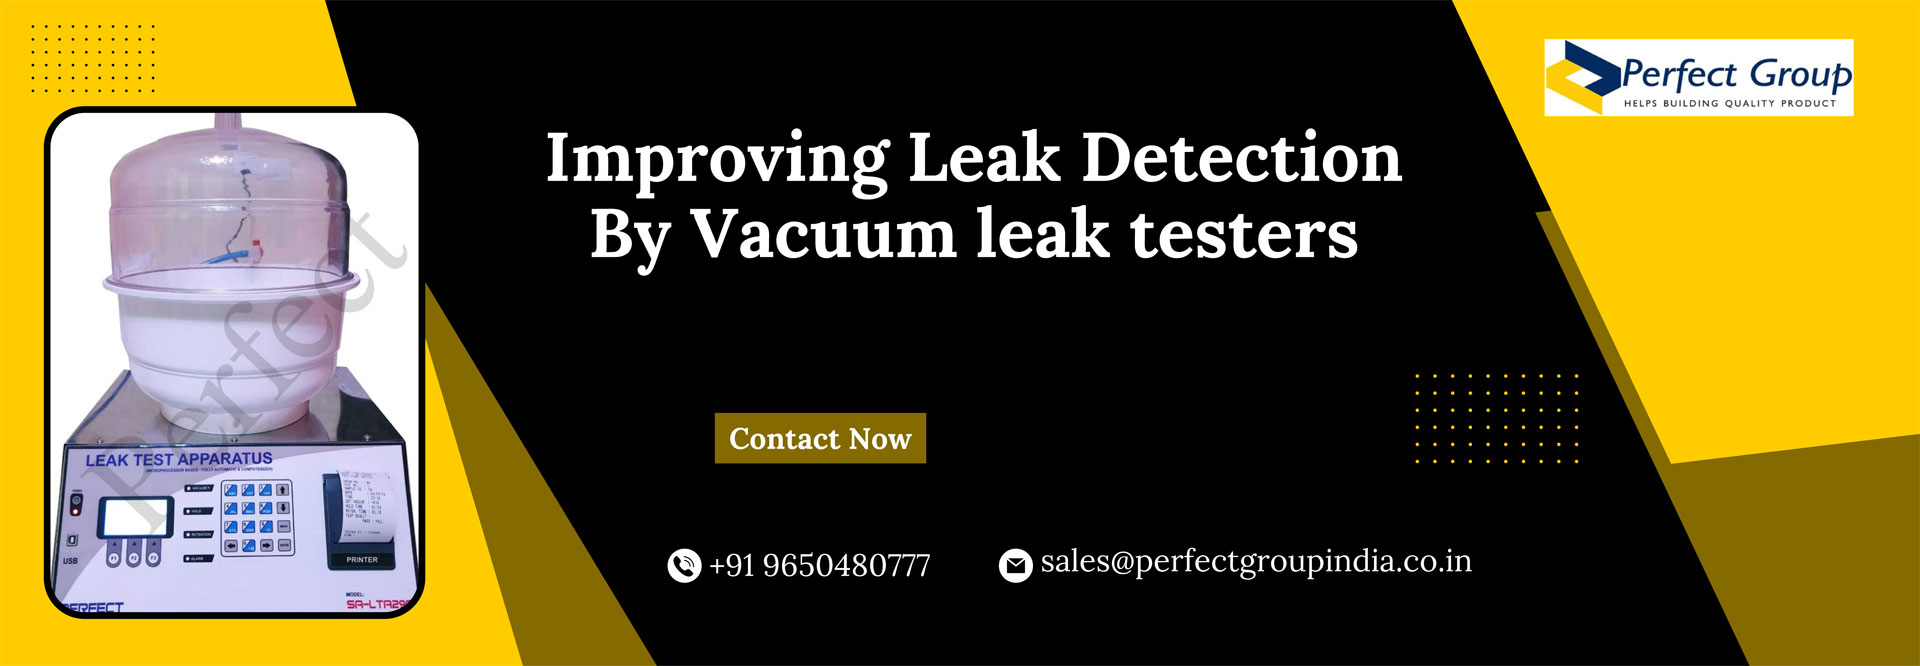 Improving Leak Detection By Vacuum leak testers